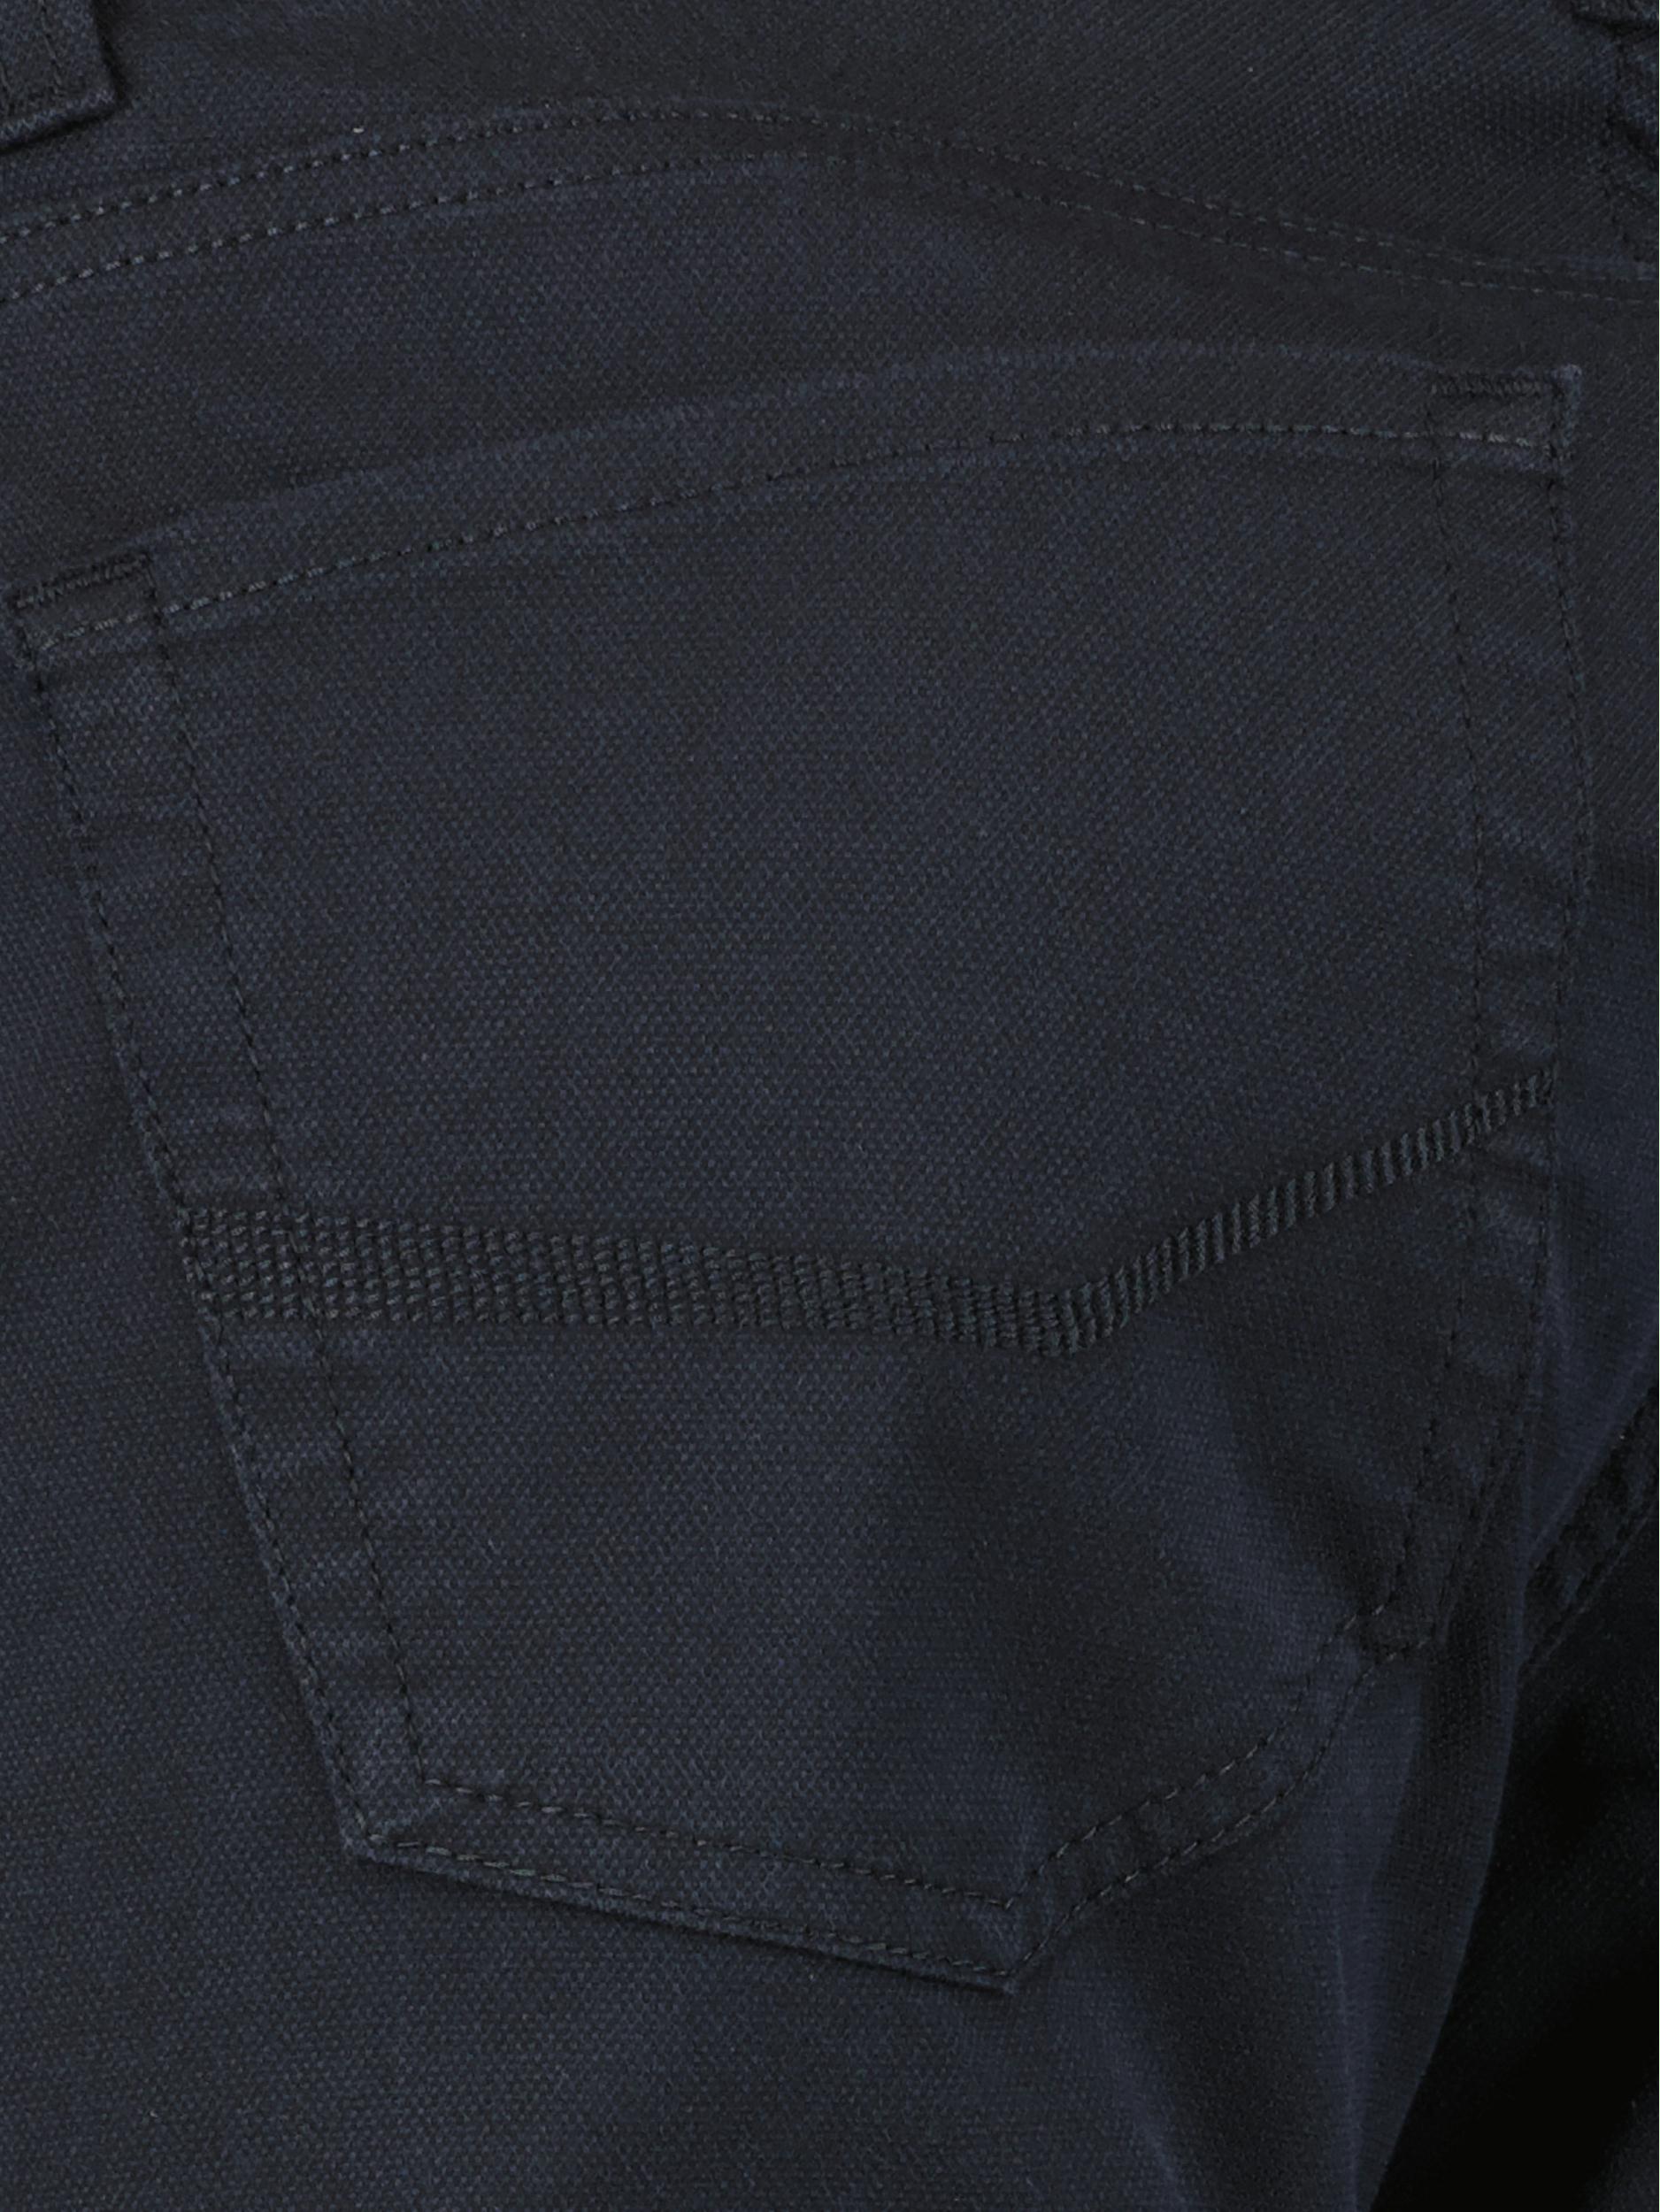 Pierre Cardin 5-Pocket Jeans Zwart  C3 34540.4200/6319